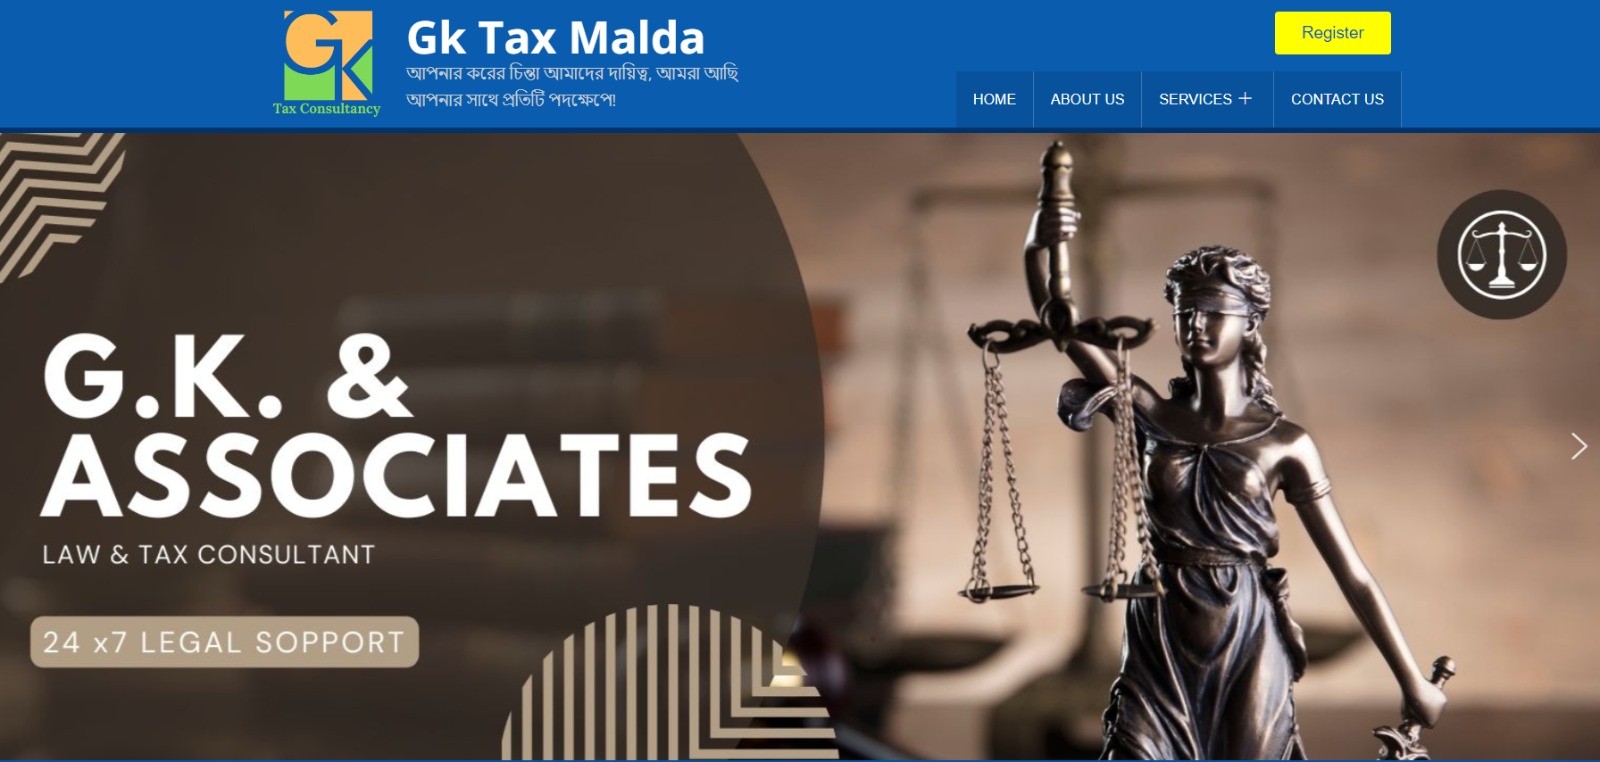 We have designed GK Tax Malda website